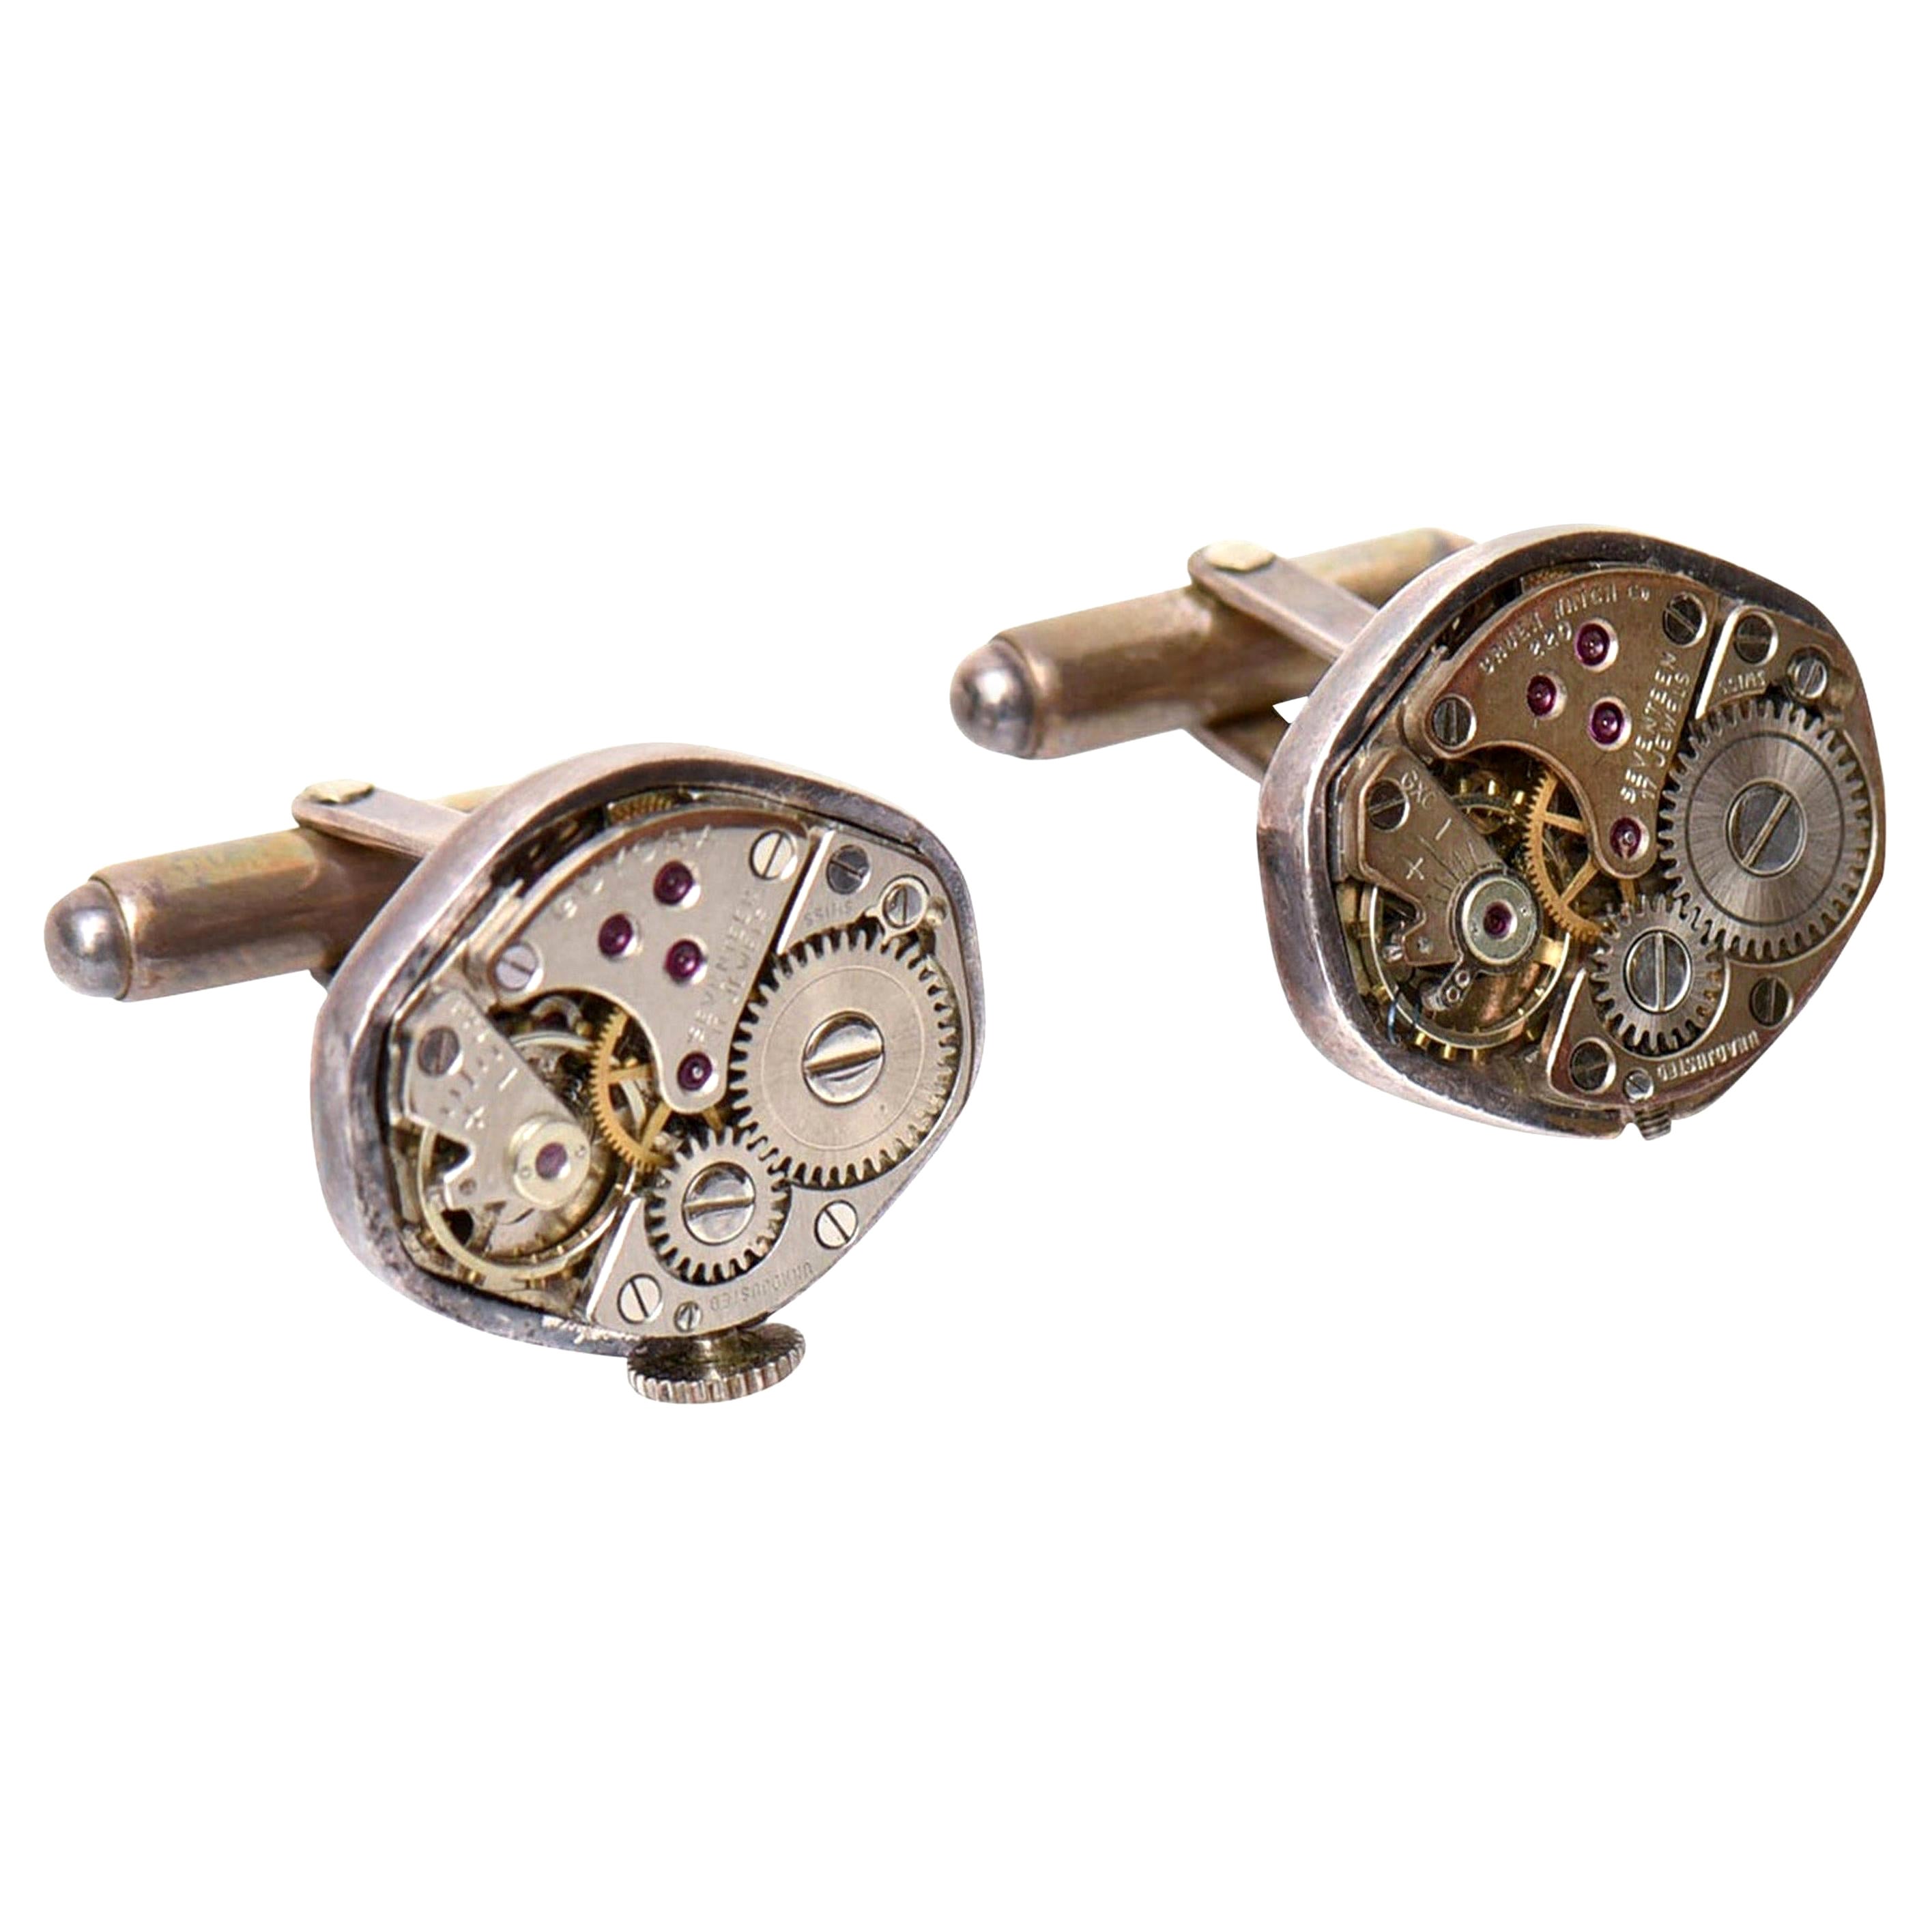  Sterling Silber benutzerdefinierte Uhr Teil Manschettenknöpfe 